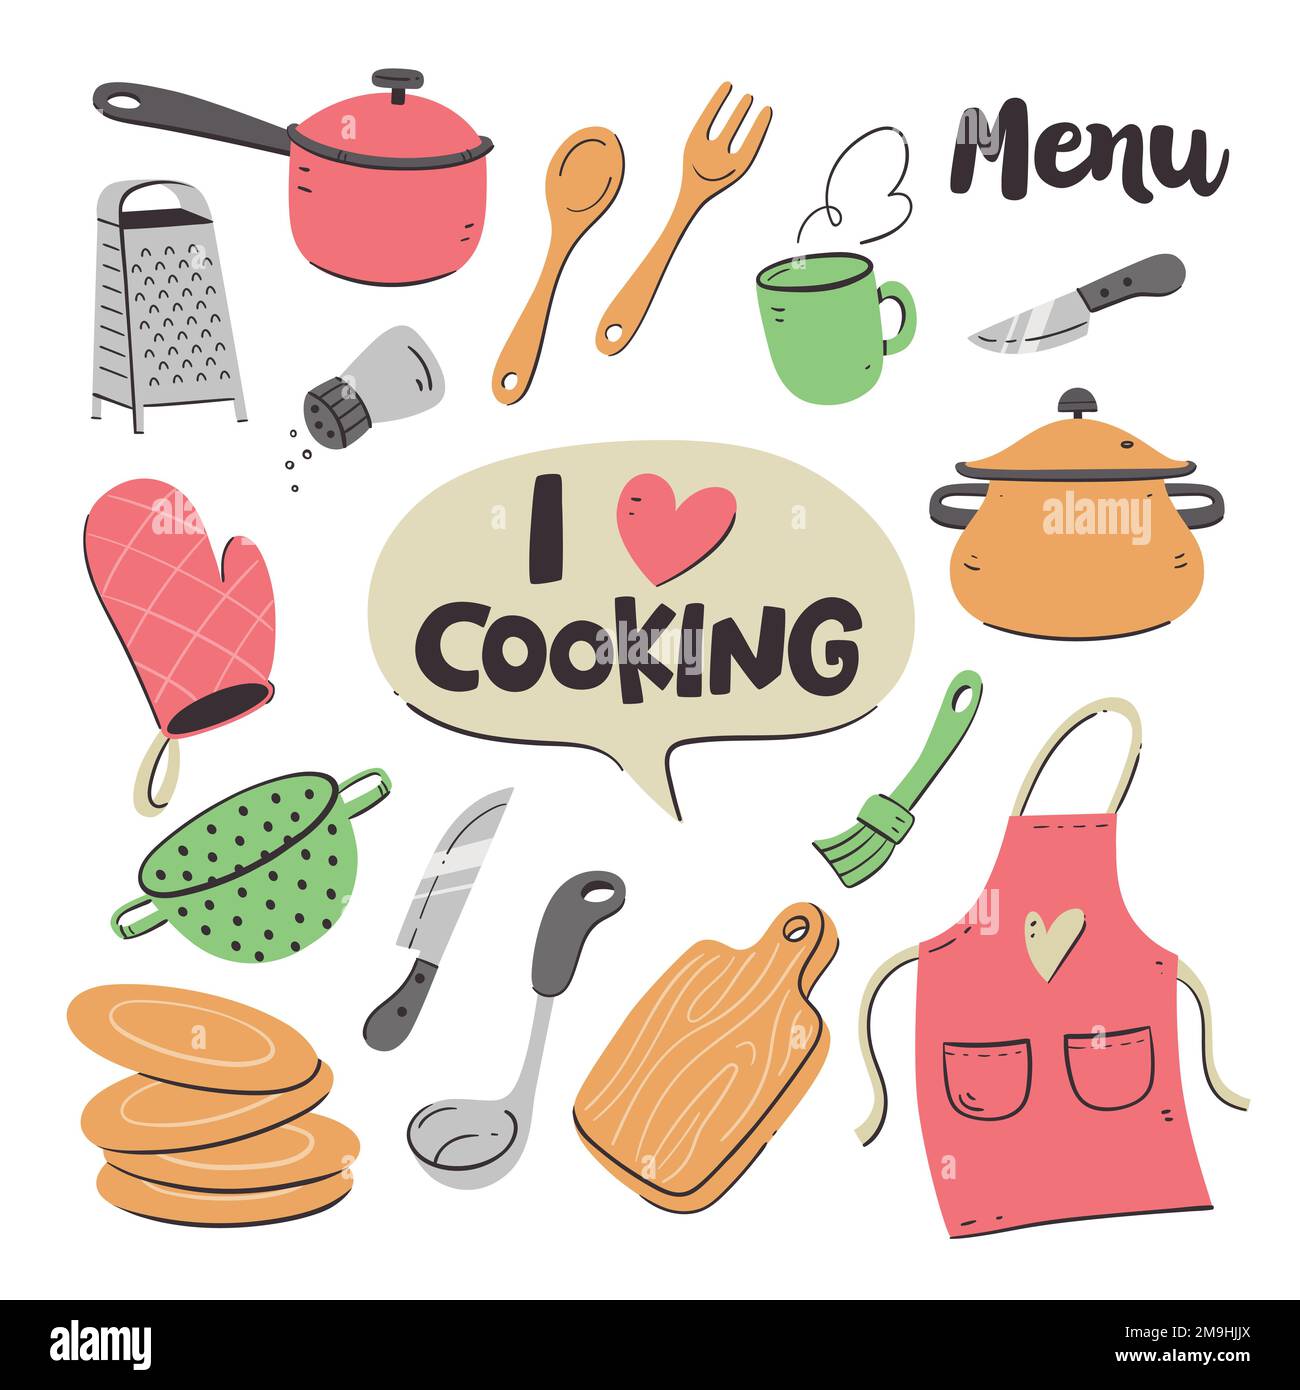 Küchenwerkzeuge und -Geräte. Süße Illustration mit isolierten Kochobjekten im Vektorformat. Küchenutensilien-Sammlung. Abbildung 2 von 2. Stock Vektor